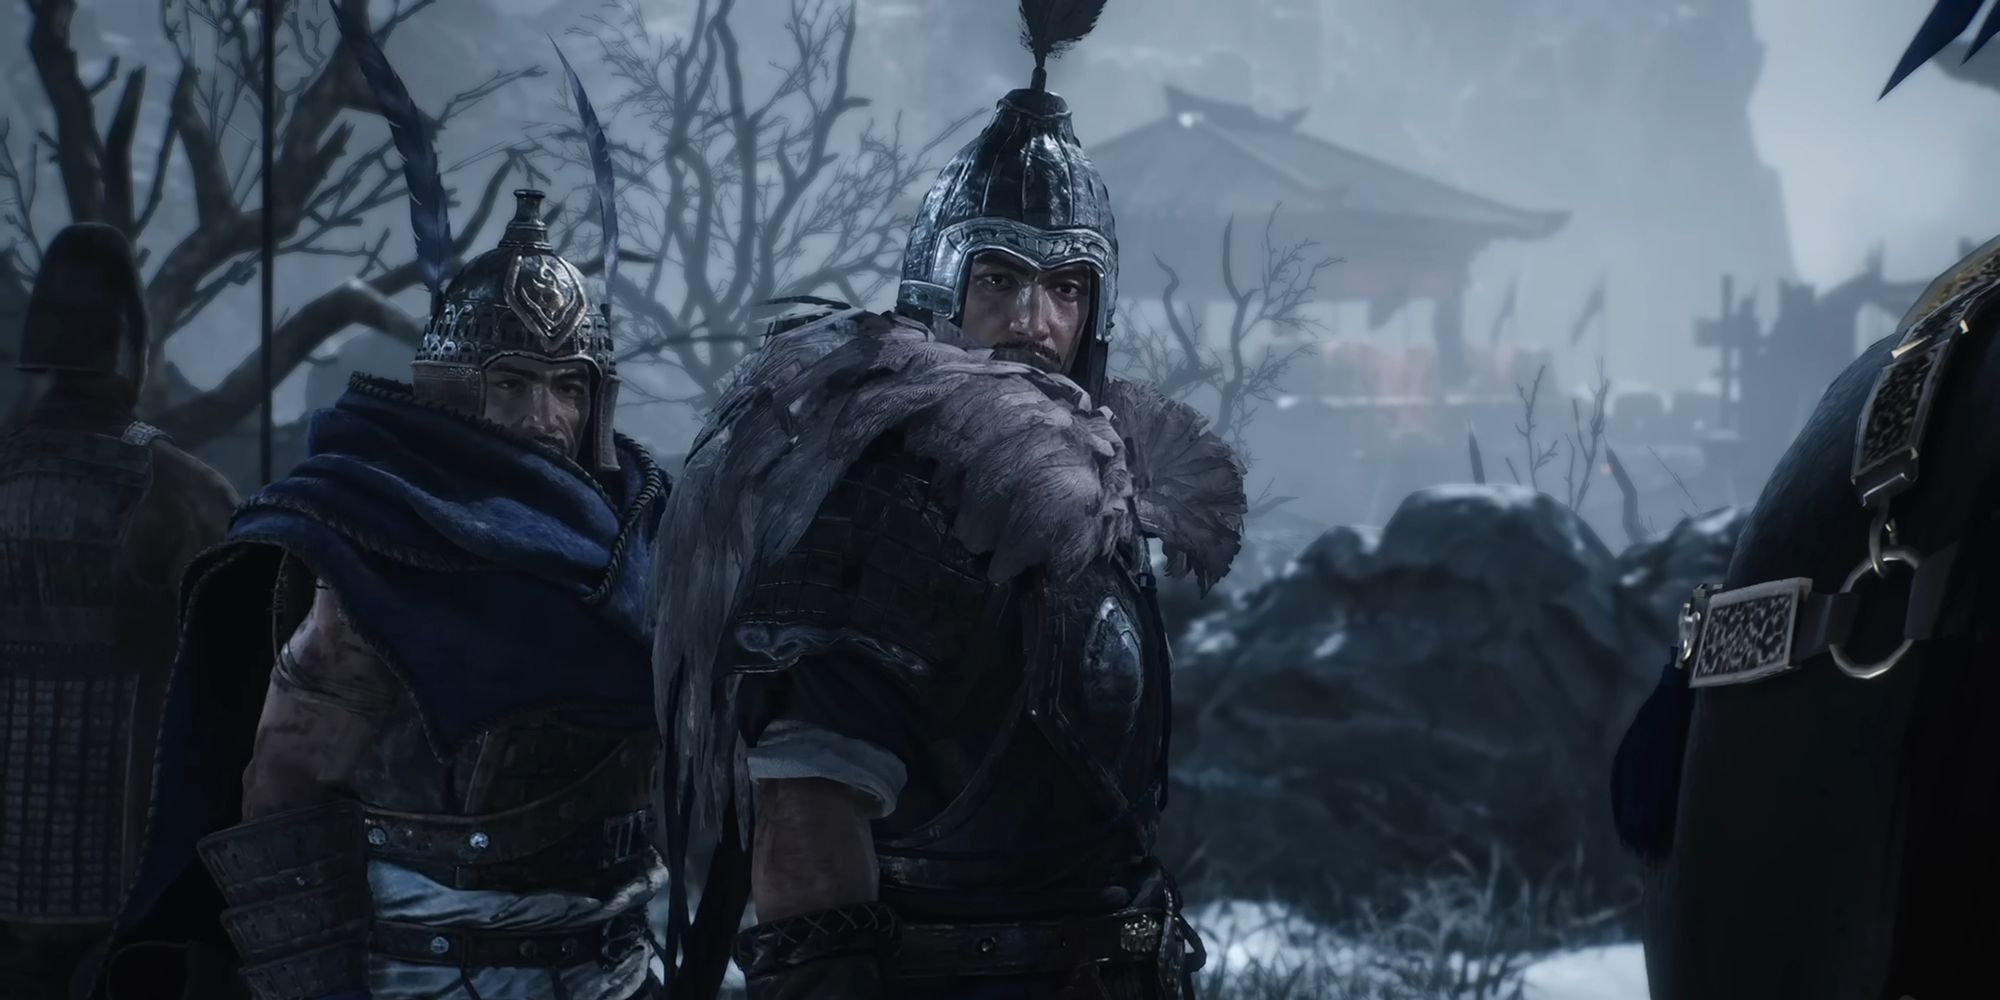 Wo Long Fallen Dynasty - Xiahou Dun and brother Yuan Looking Toward Player Character